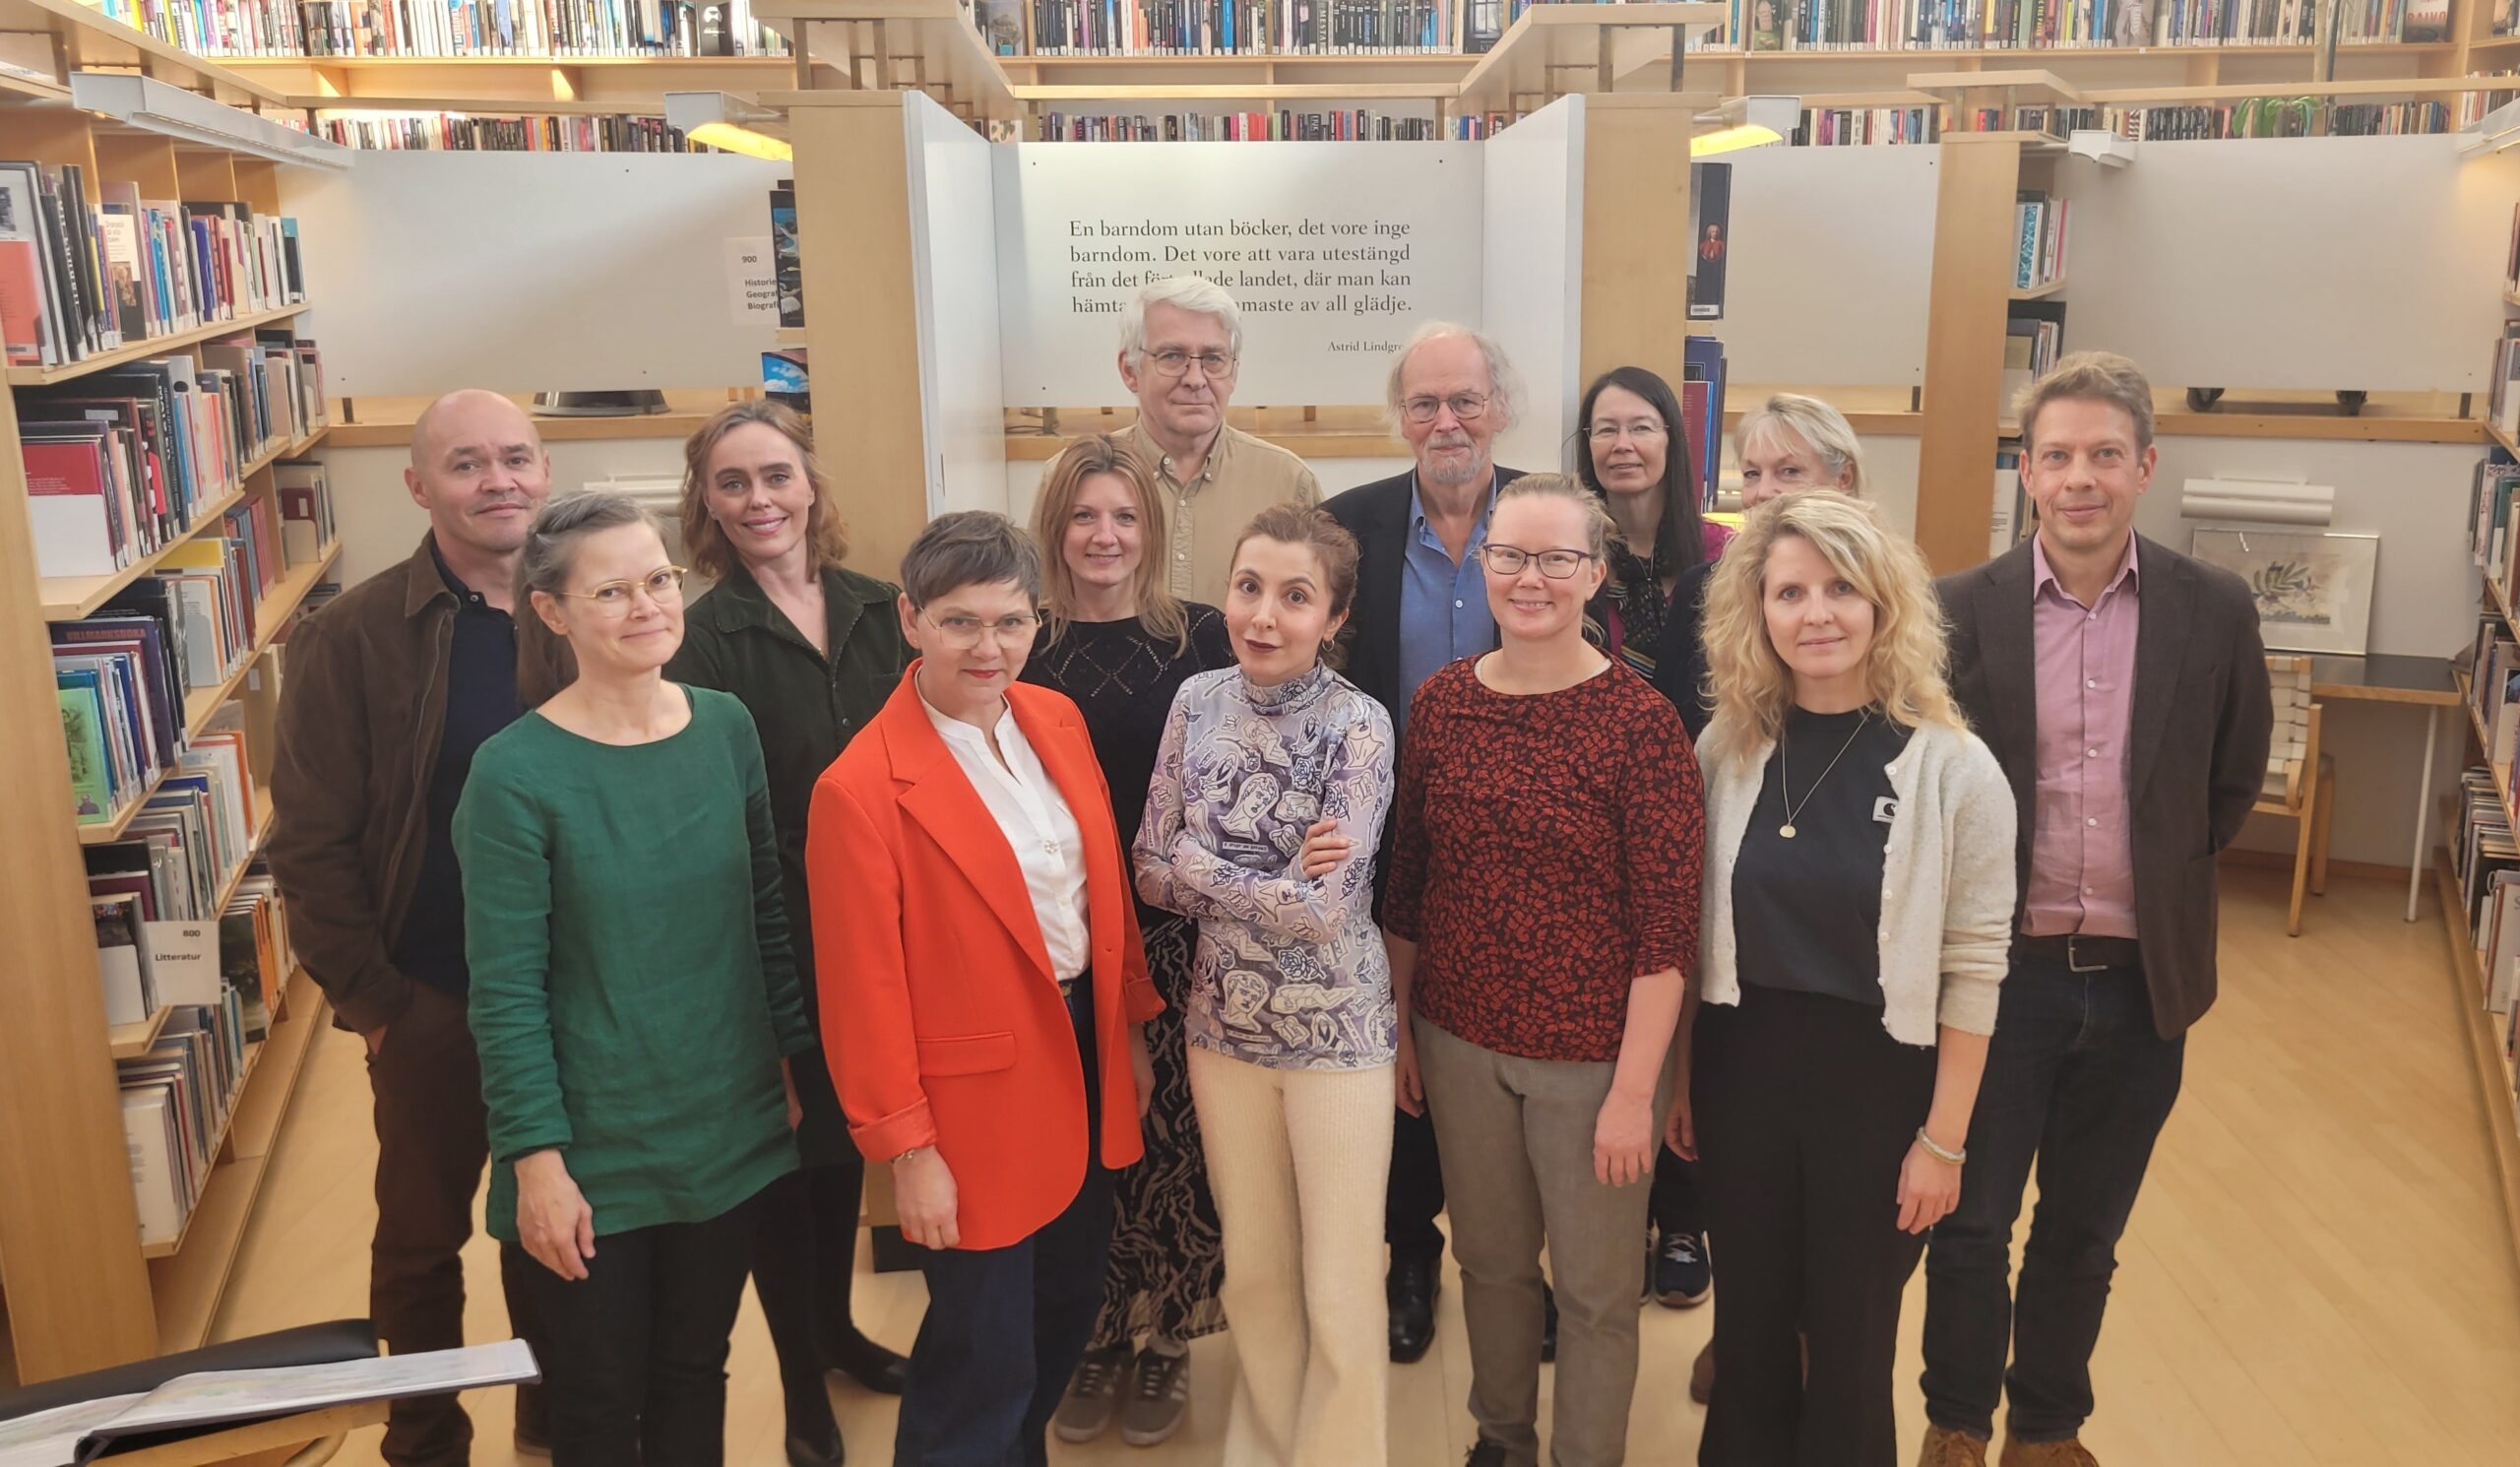 The Nordic Council’s Literature Prize